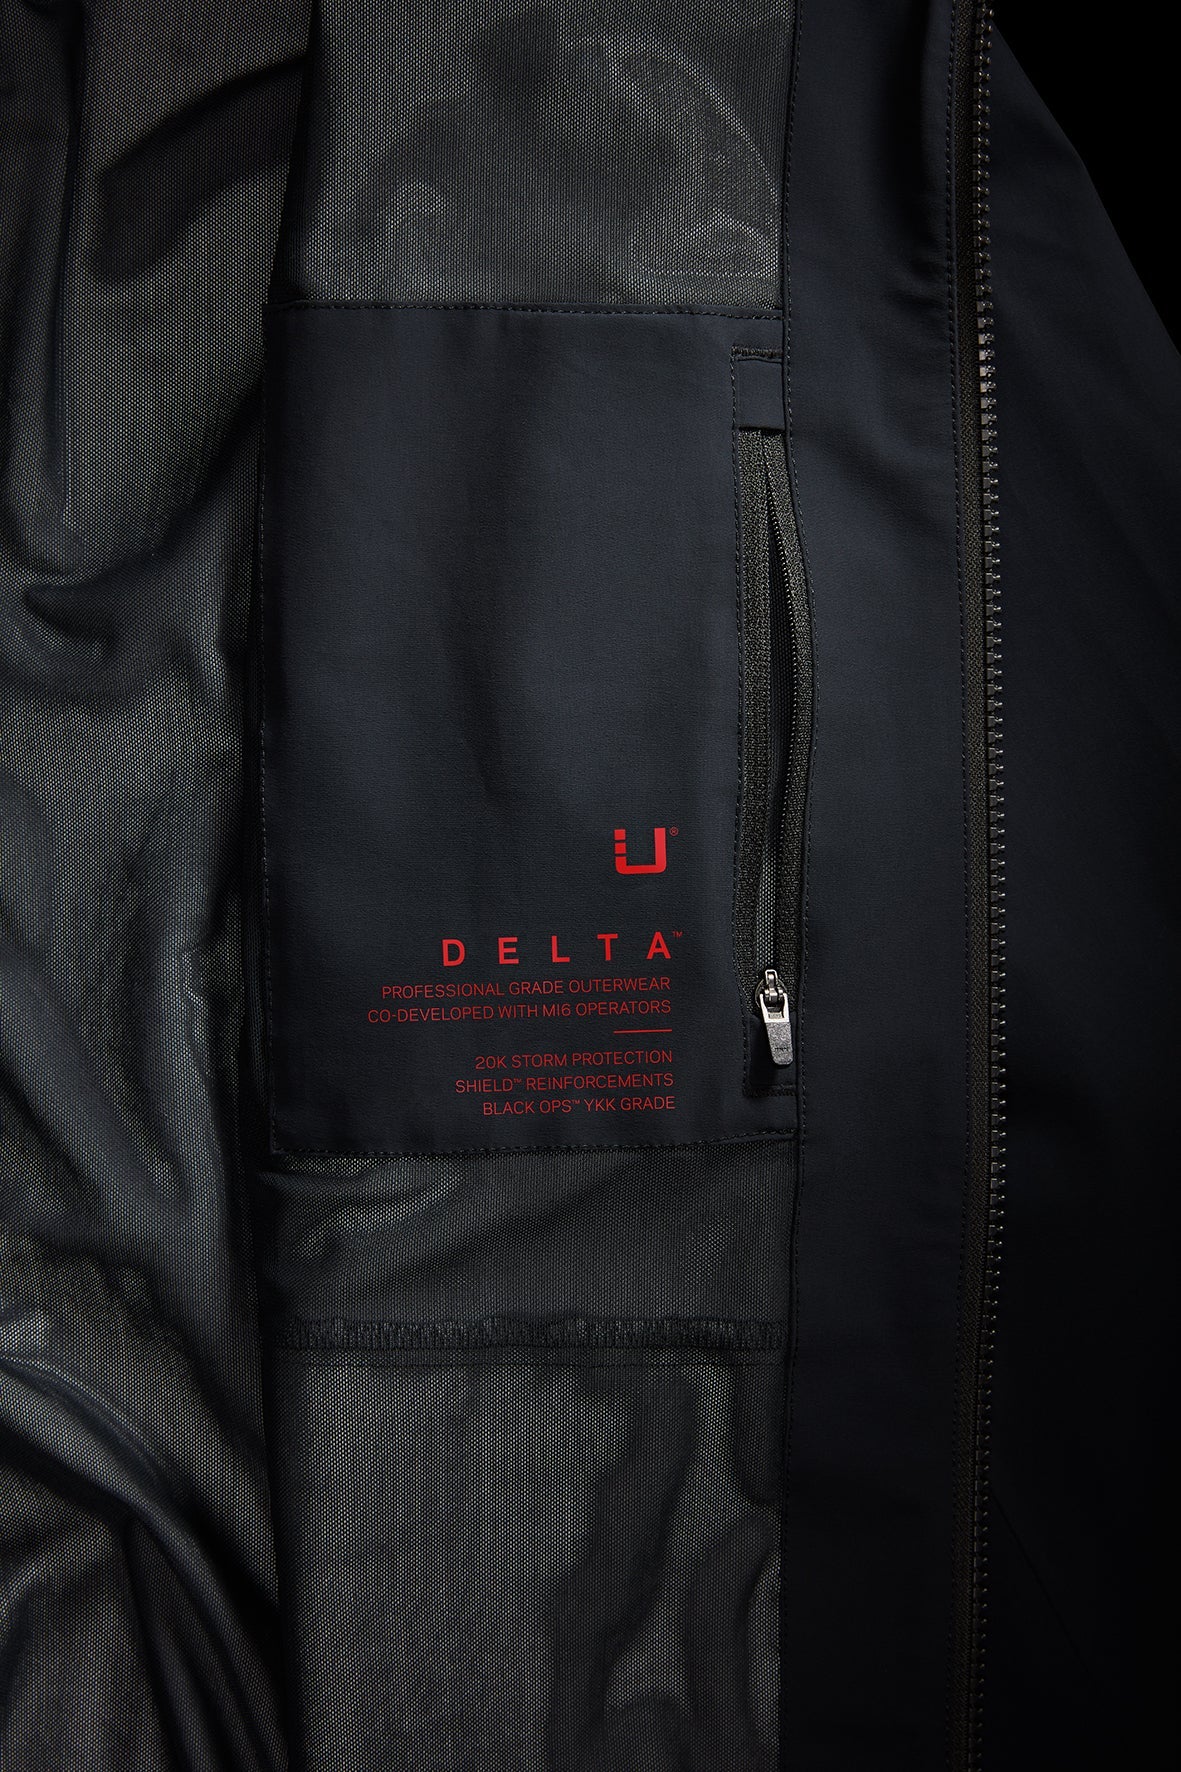 UBR UBR Bullet delta black